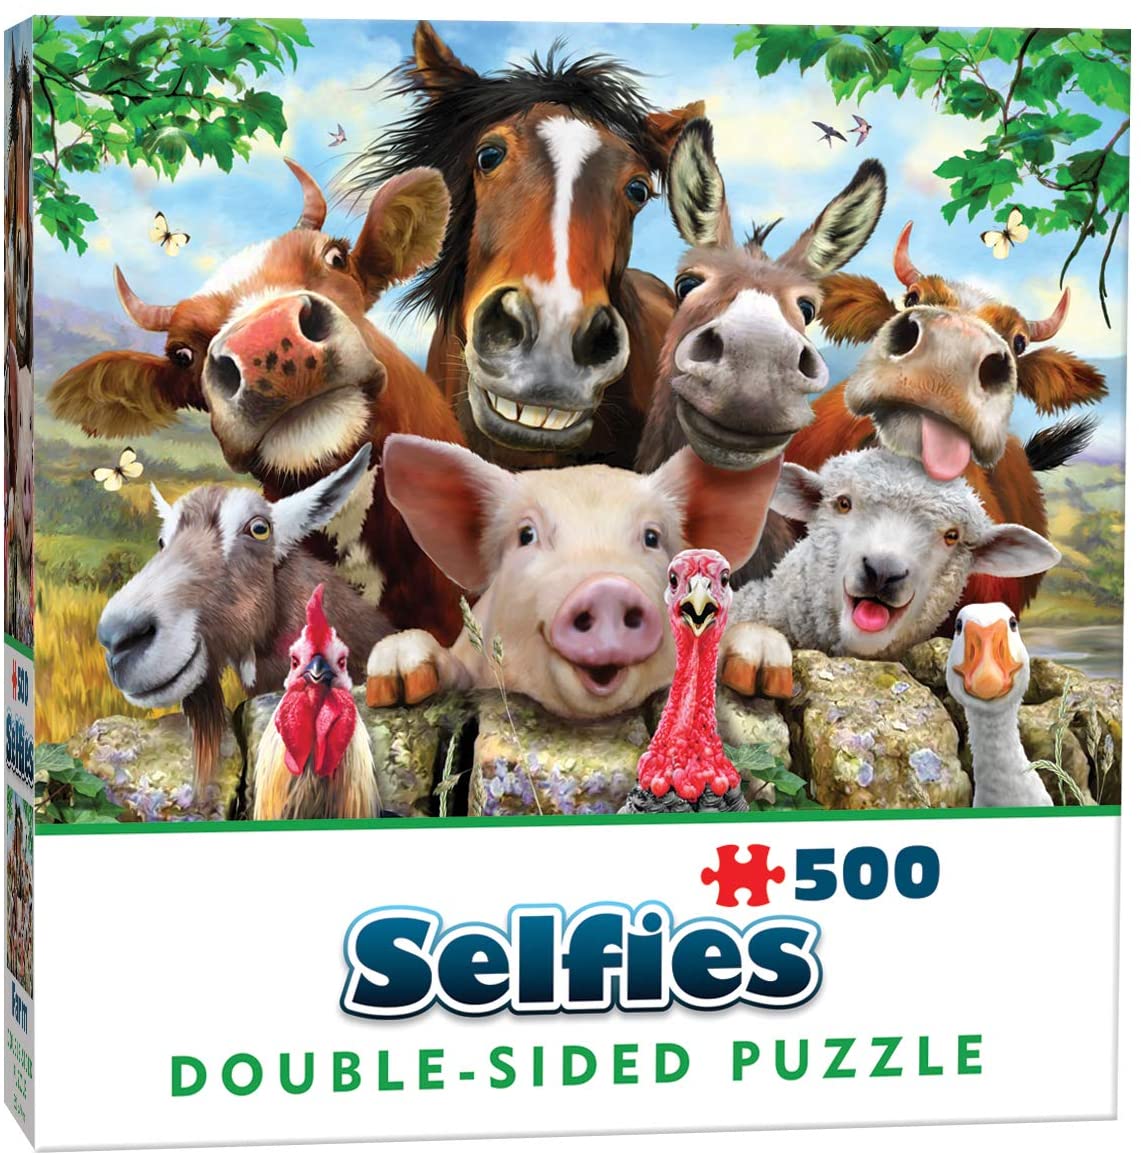 Double-Sided Selfie - Farm Friends